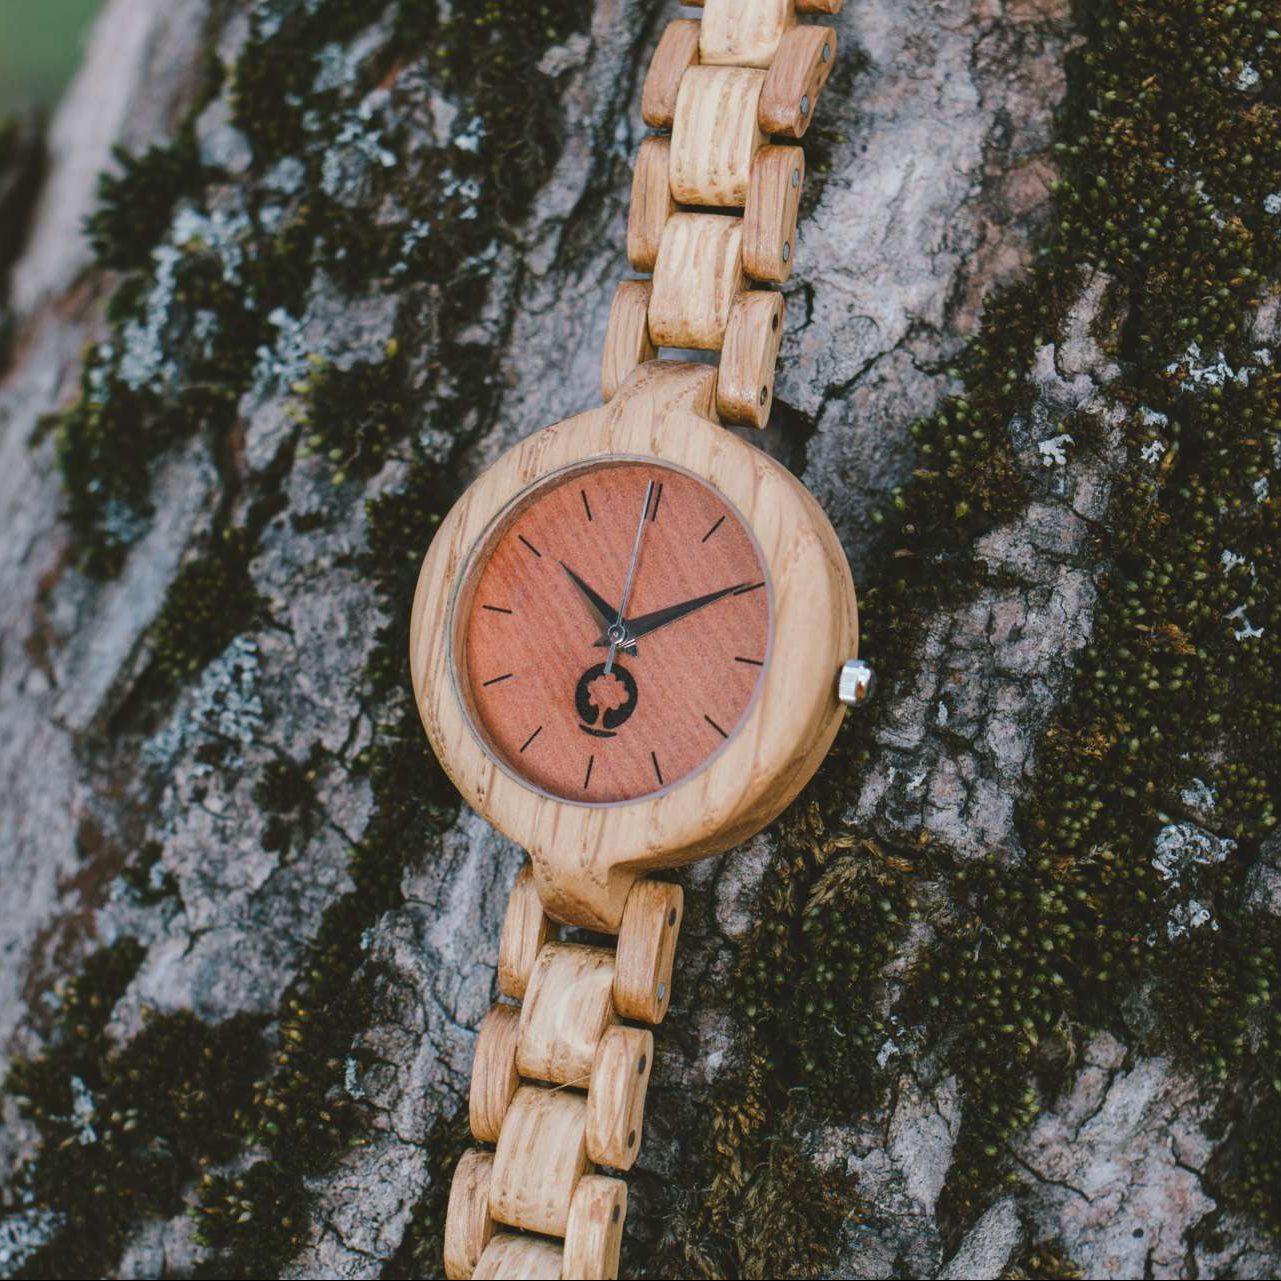 wooden watch Plantwear